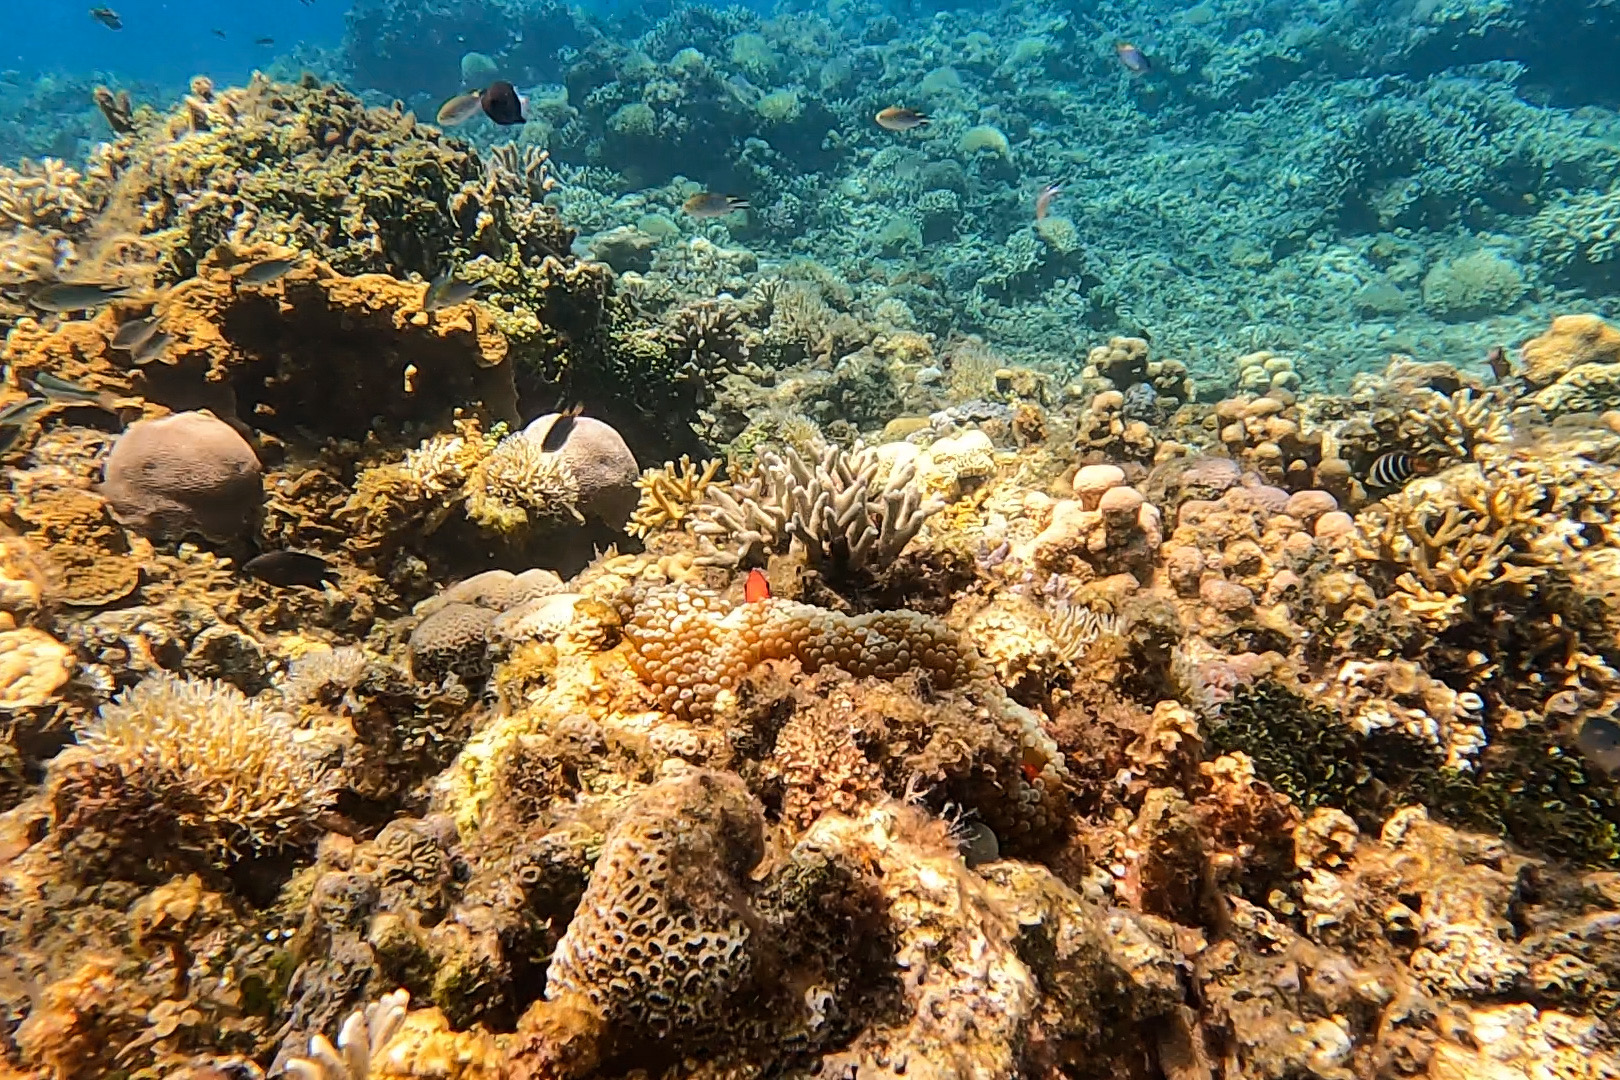 座間味島の海は自然豊かで、珊瑚や様々な熱帯魚と出会うことができます。